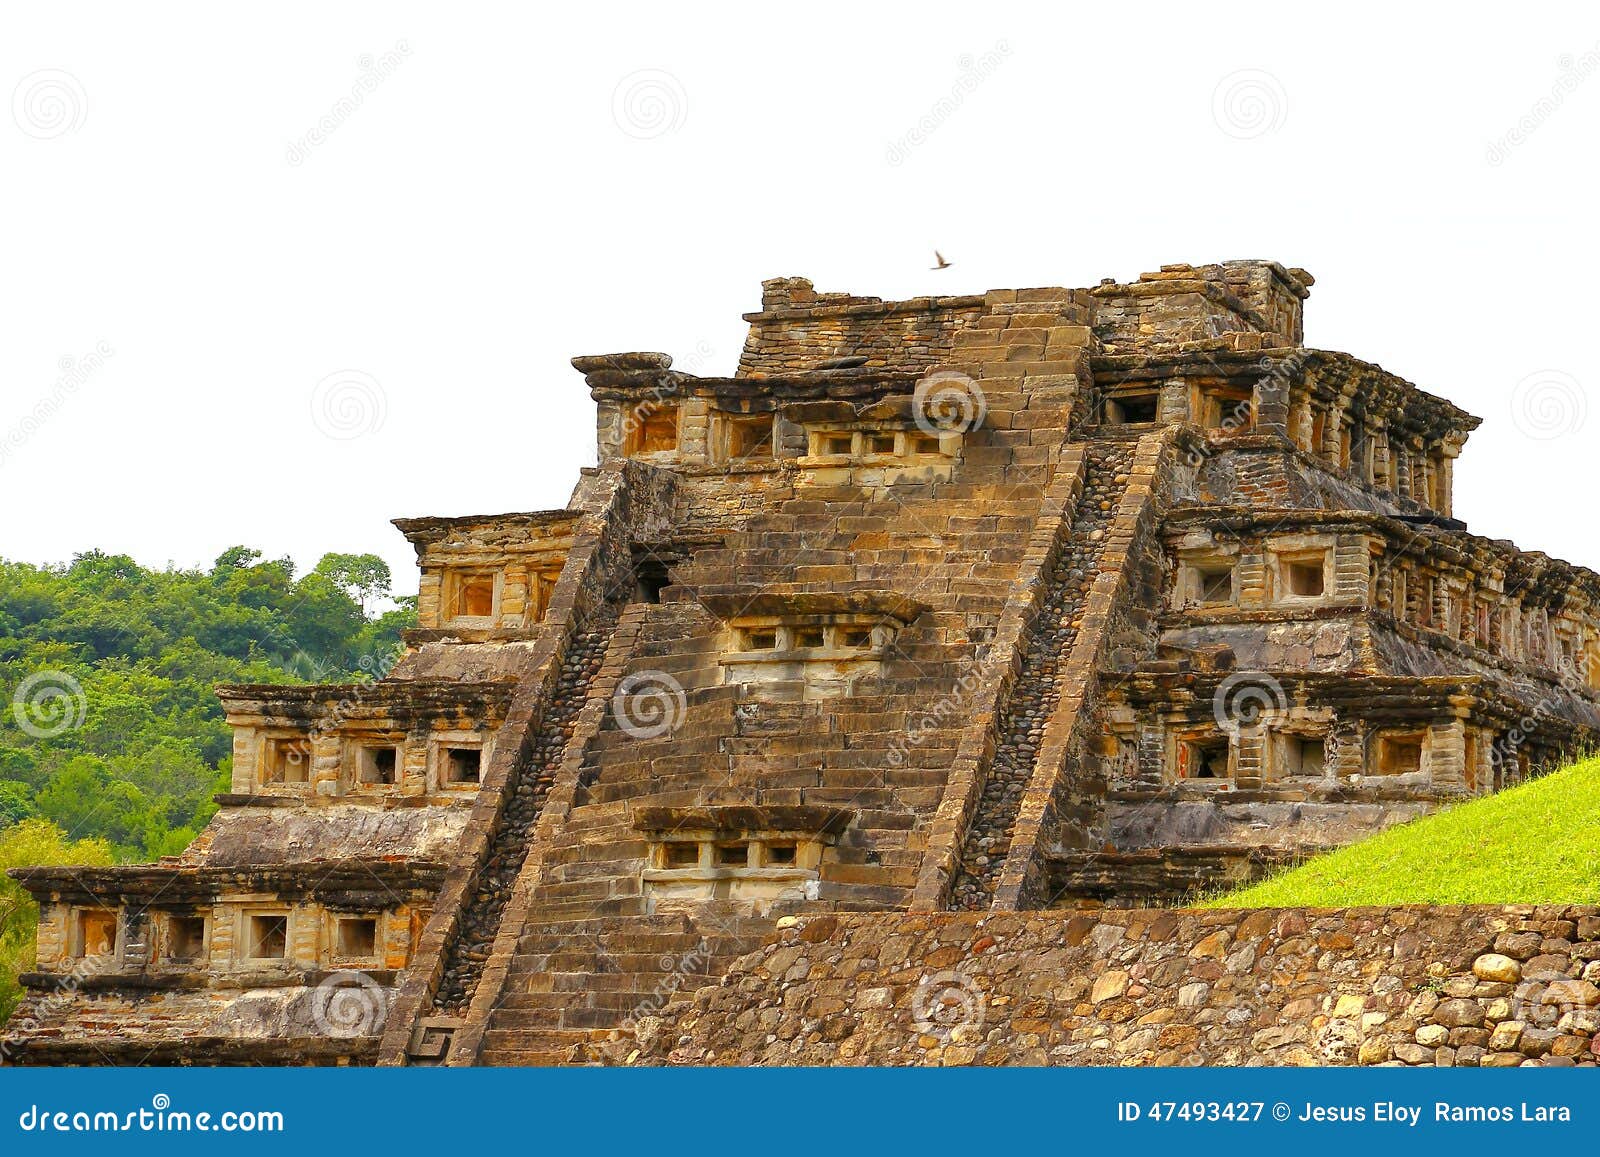 niches pyramid in tajin veracruz mexico i